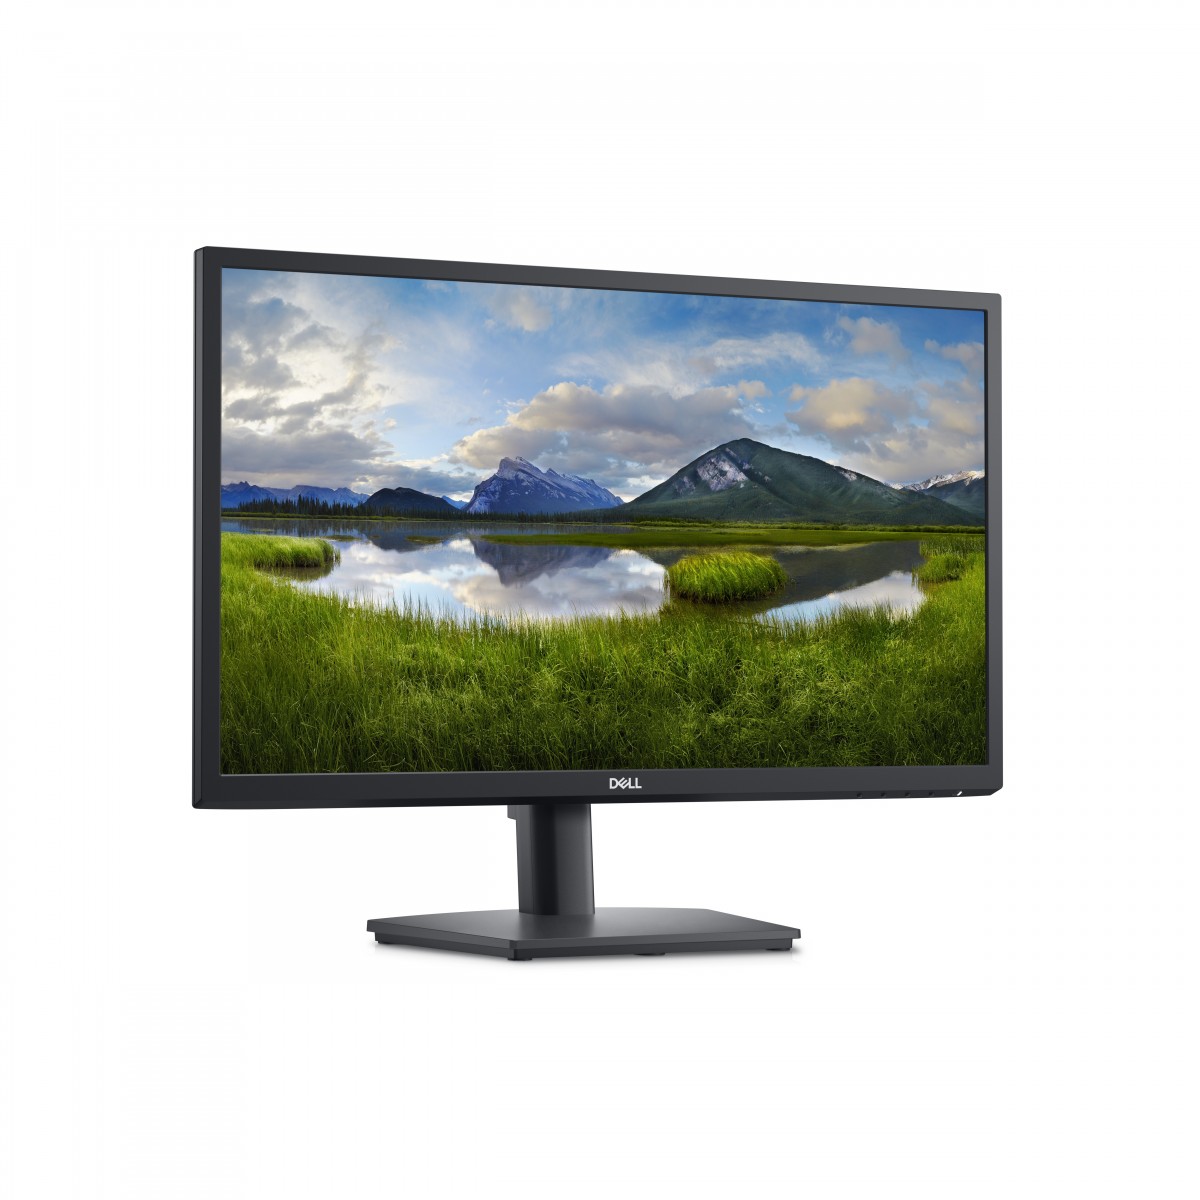 Dell 24 Monitor - E2422HS - 60.5 cm 23.8 - Flat Screen